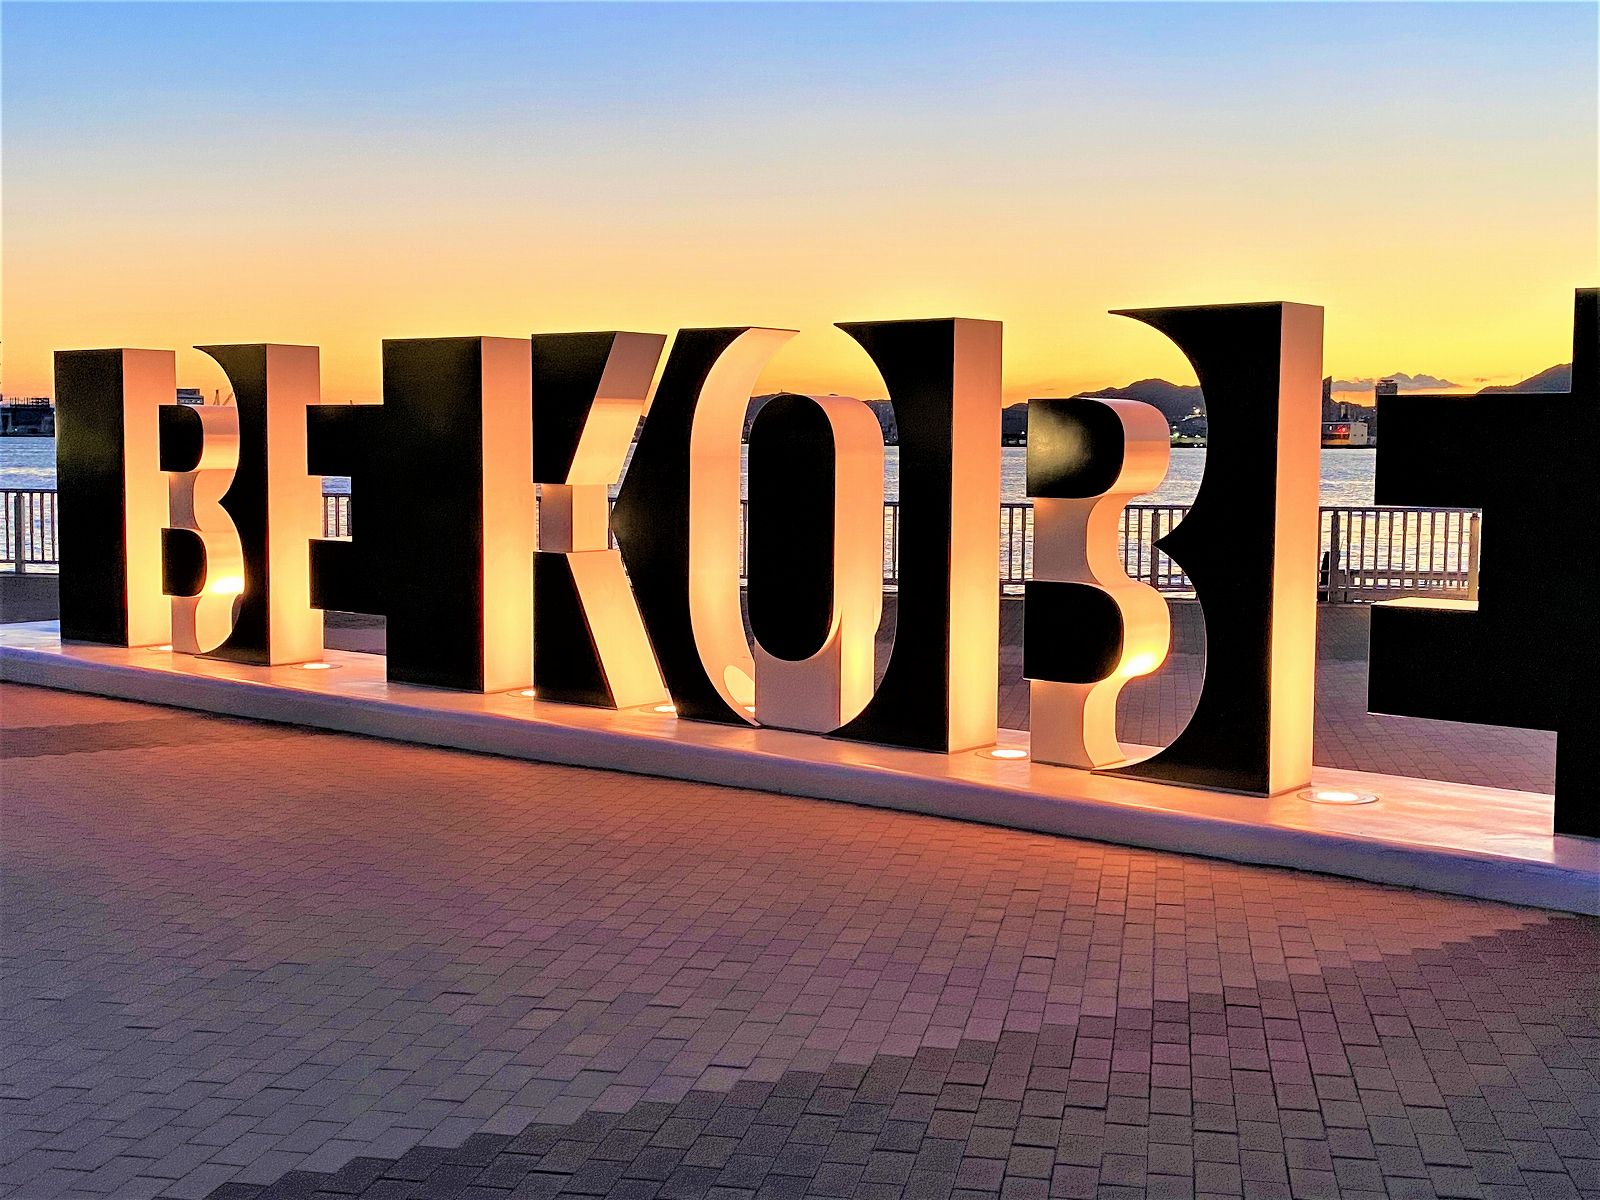 神戸の夜景スポット ポーアイしおさい公園の Be Kobe モニュメントがライトアップされ 夜景スポットに超おすすめだよ ポーアイしおさい公園 神戸観光 神戸散策 神戸の夜景 Bekobe 東灘ジャーナル